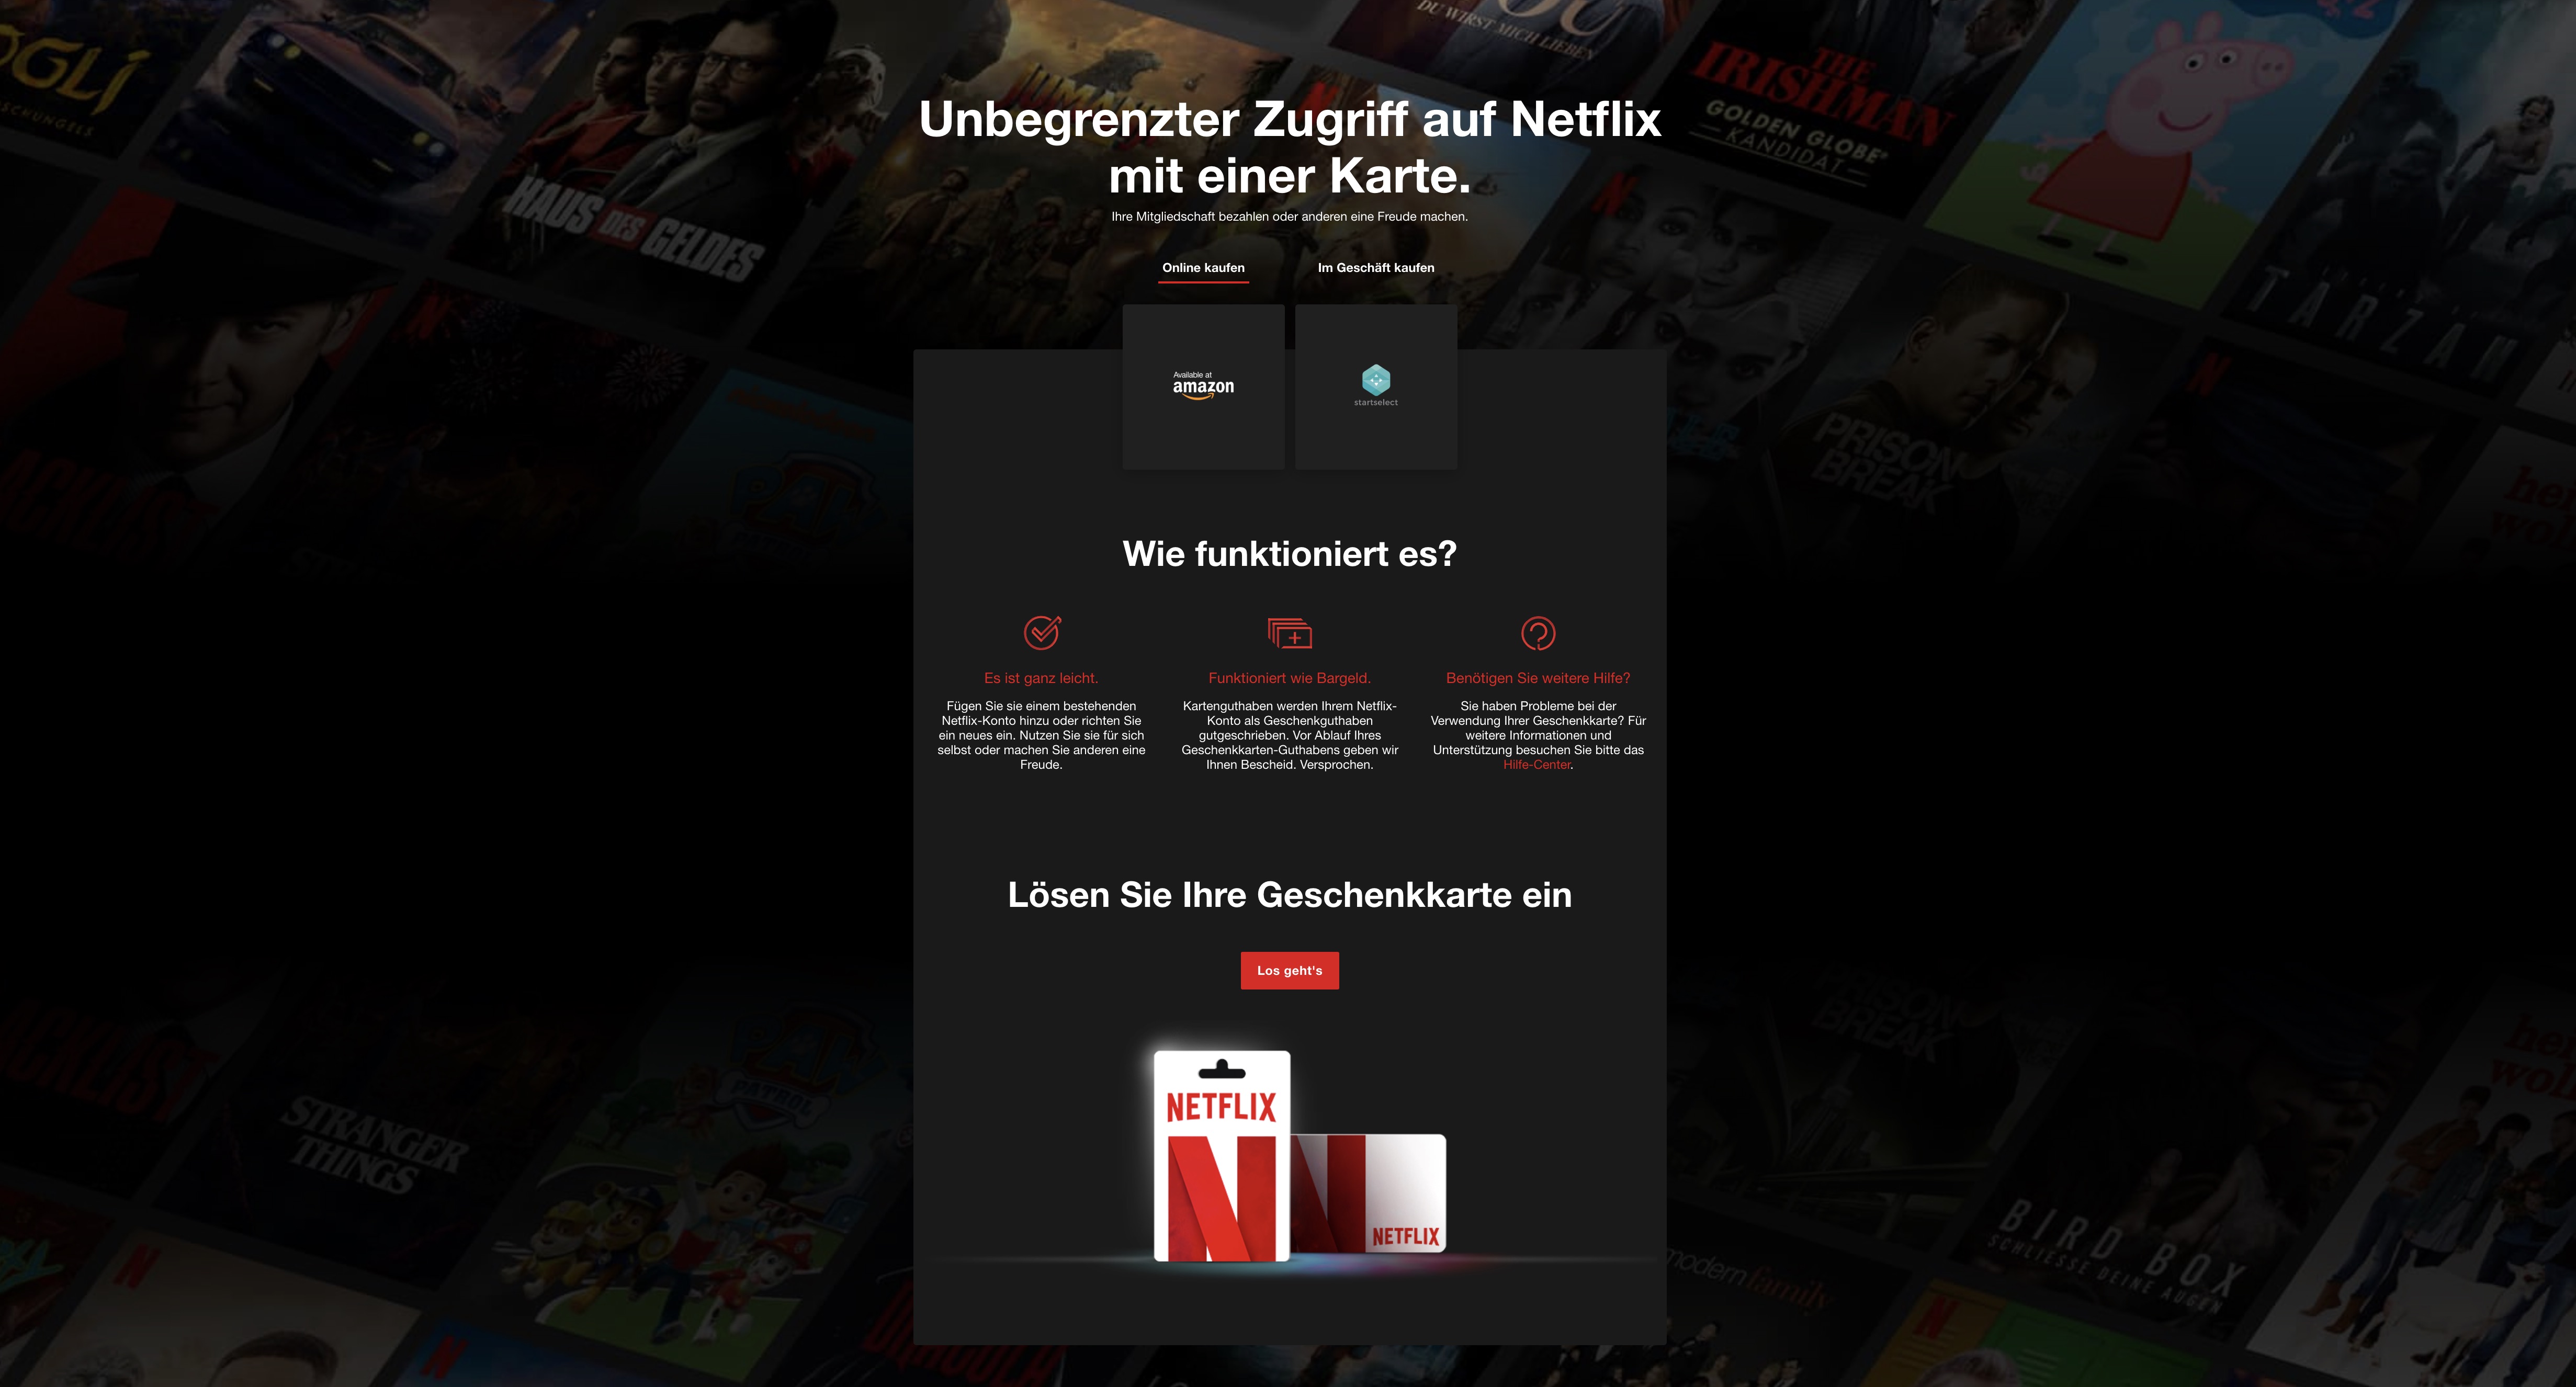 Netflix-Gutschein kaufen und einlösen: So wird es gemacht